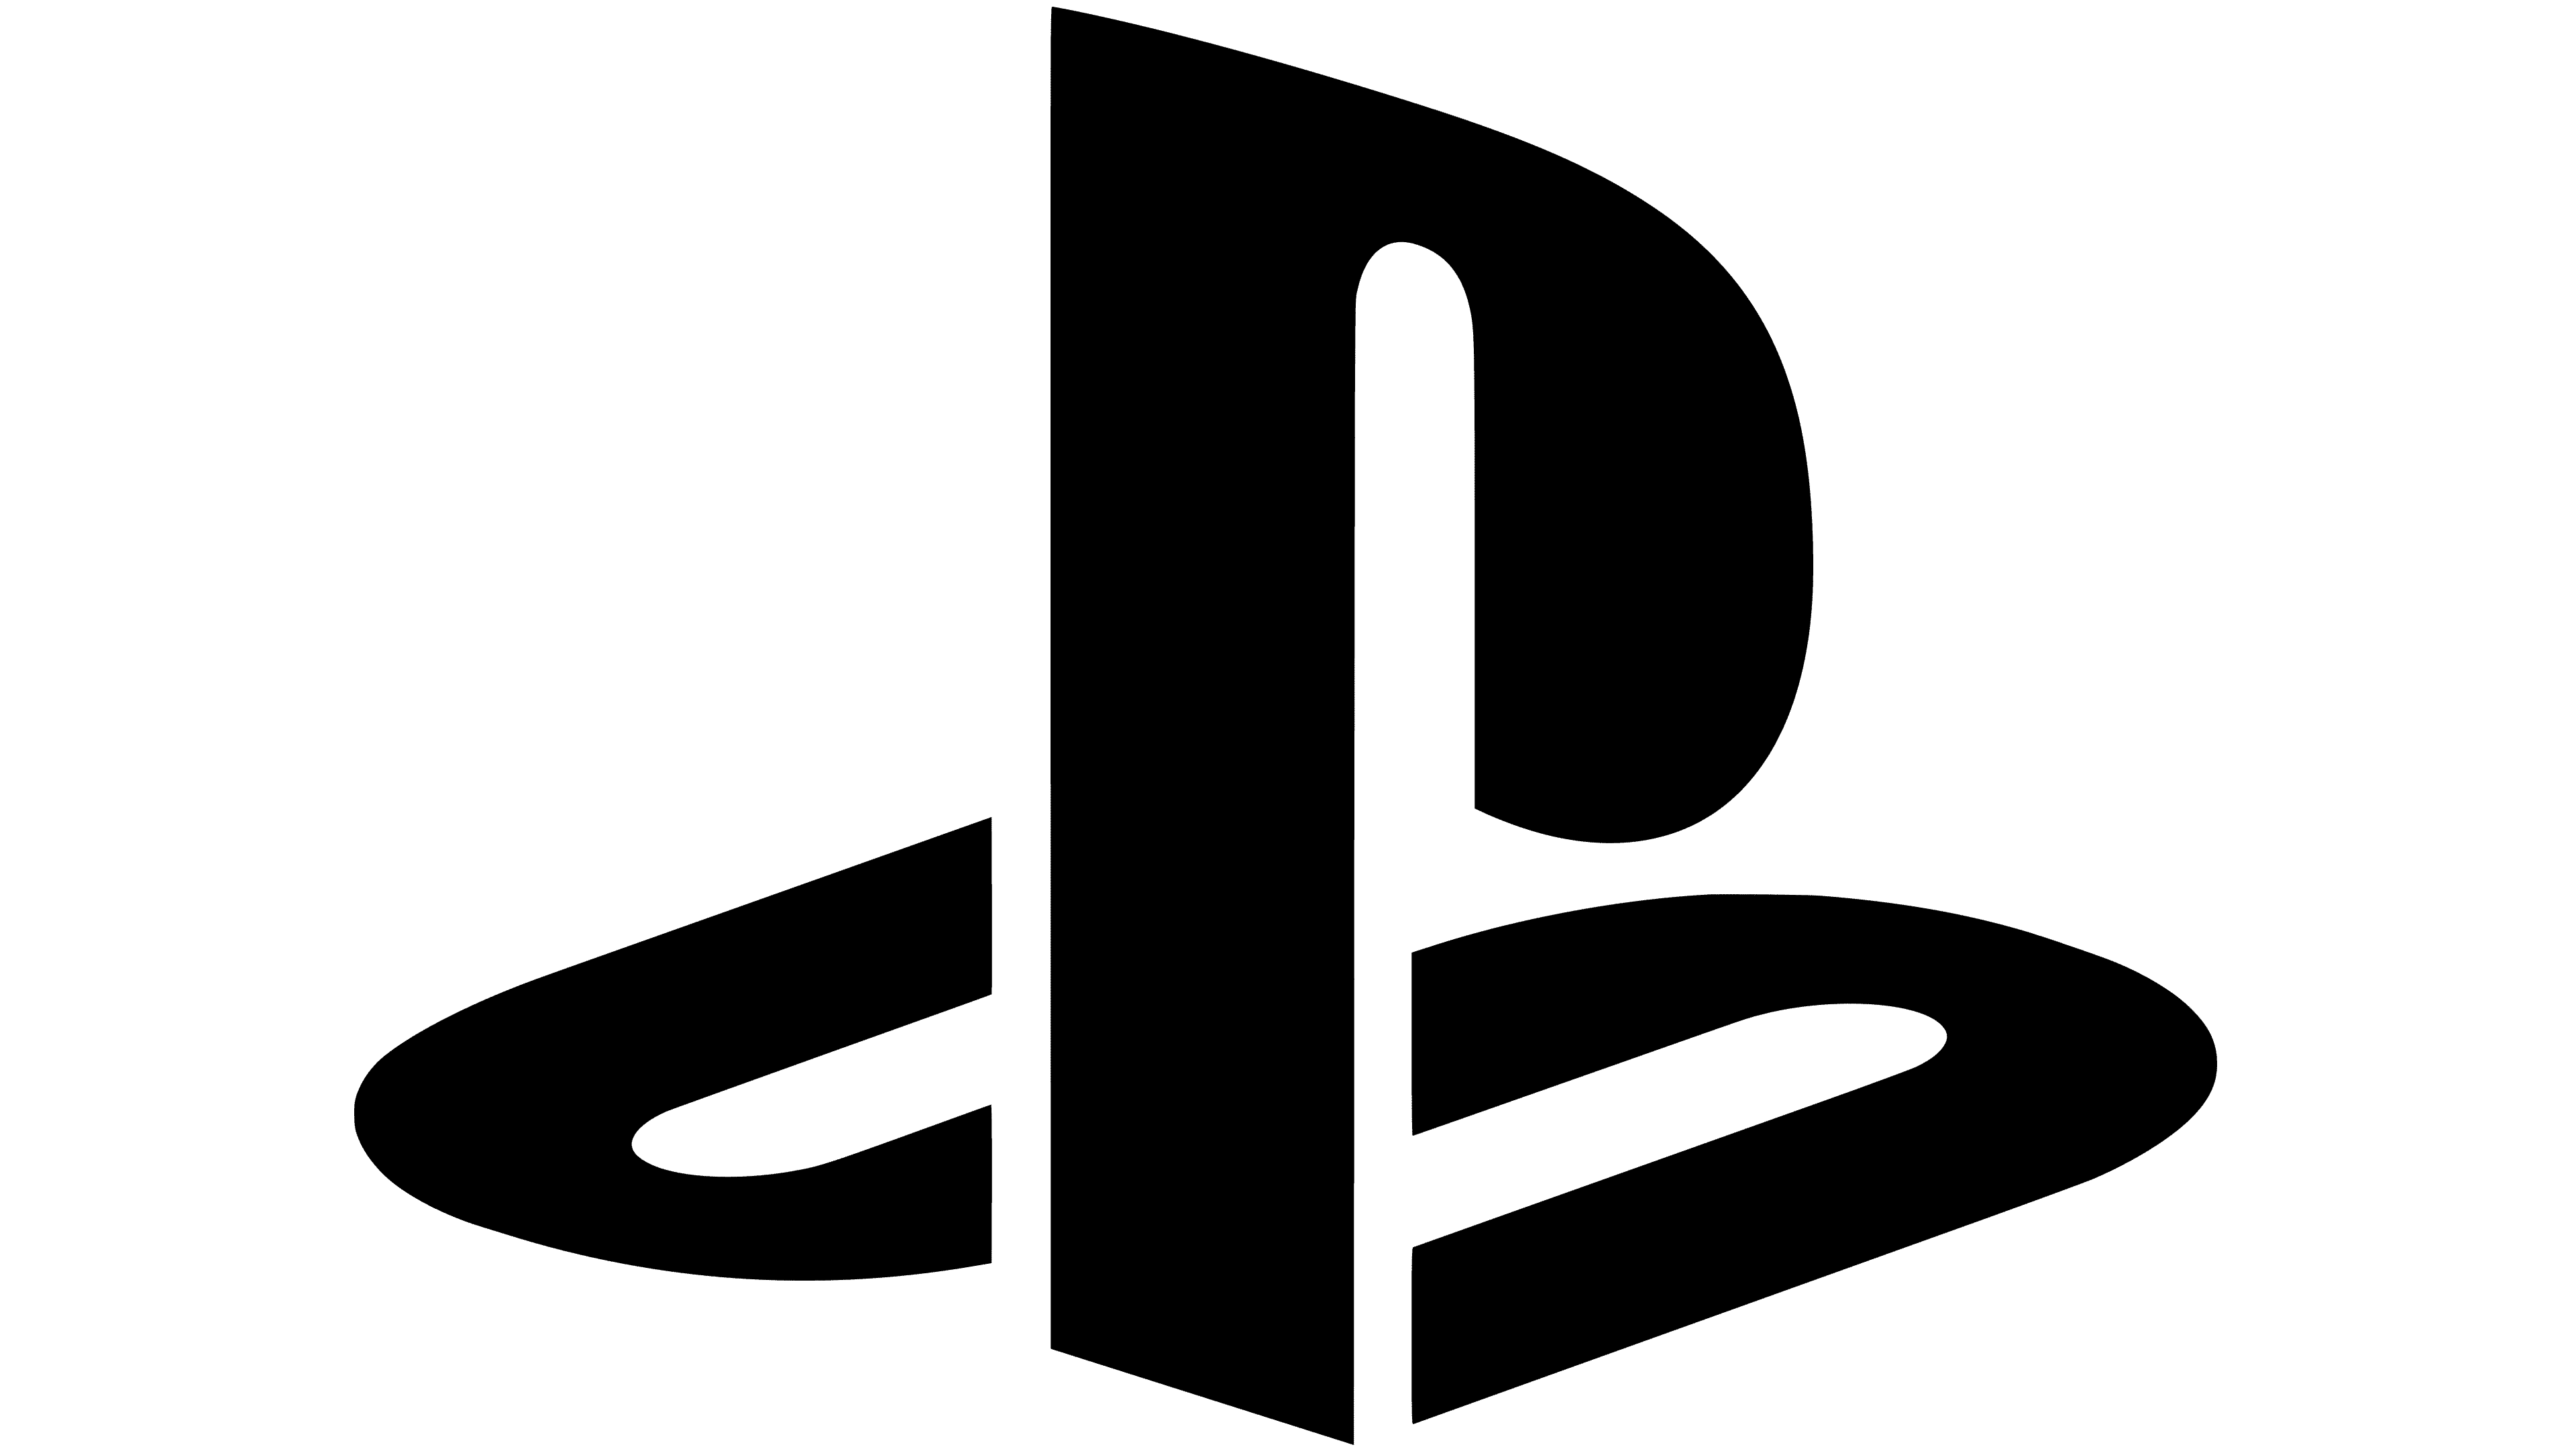 PlayStation logo PNG